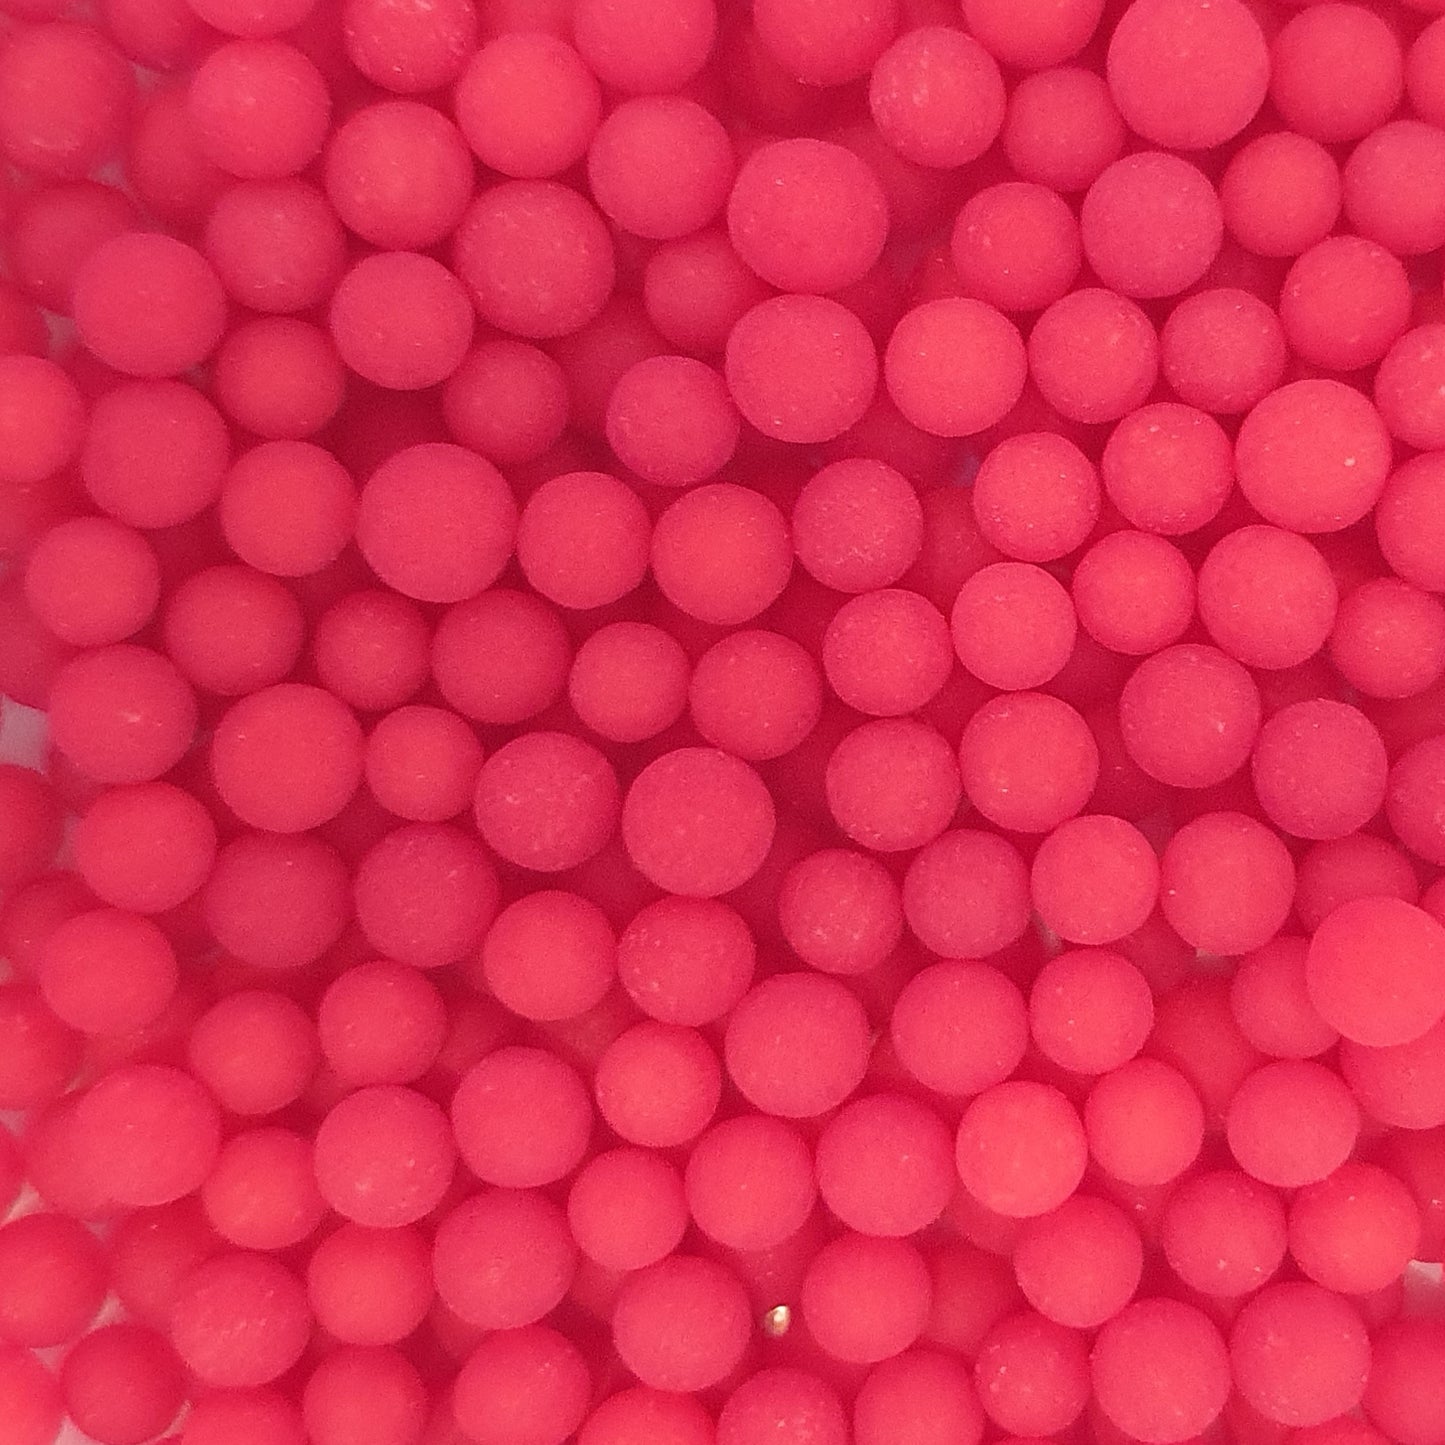 Sprinkles bag - Red Balls 4mm